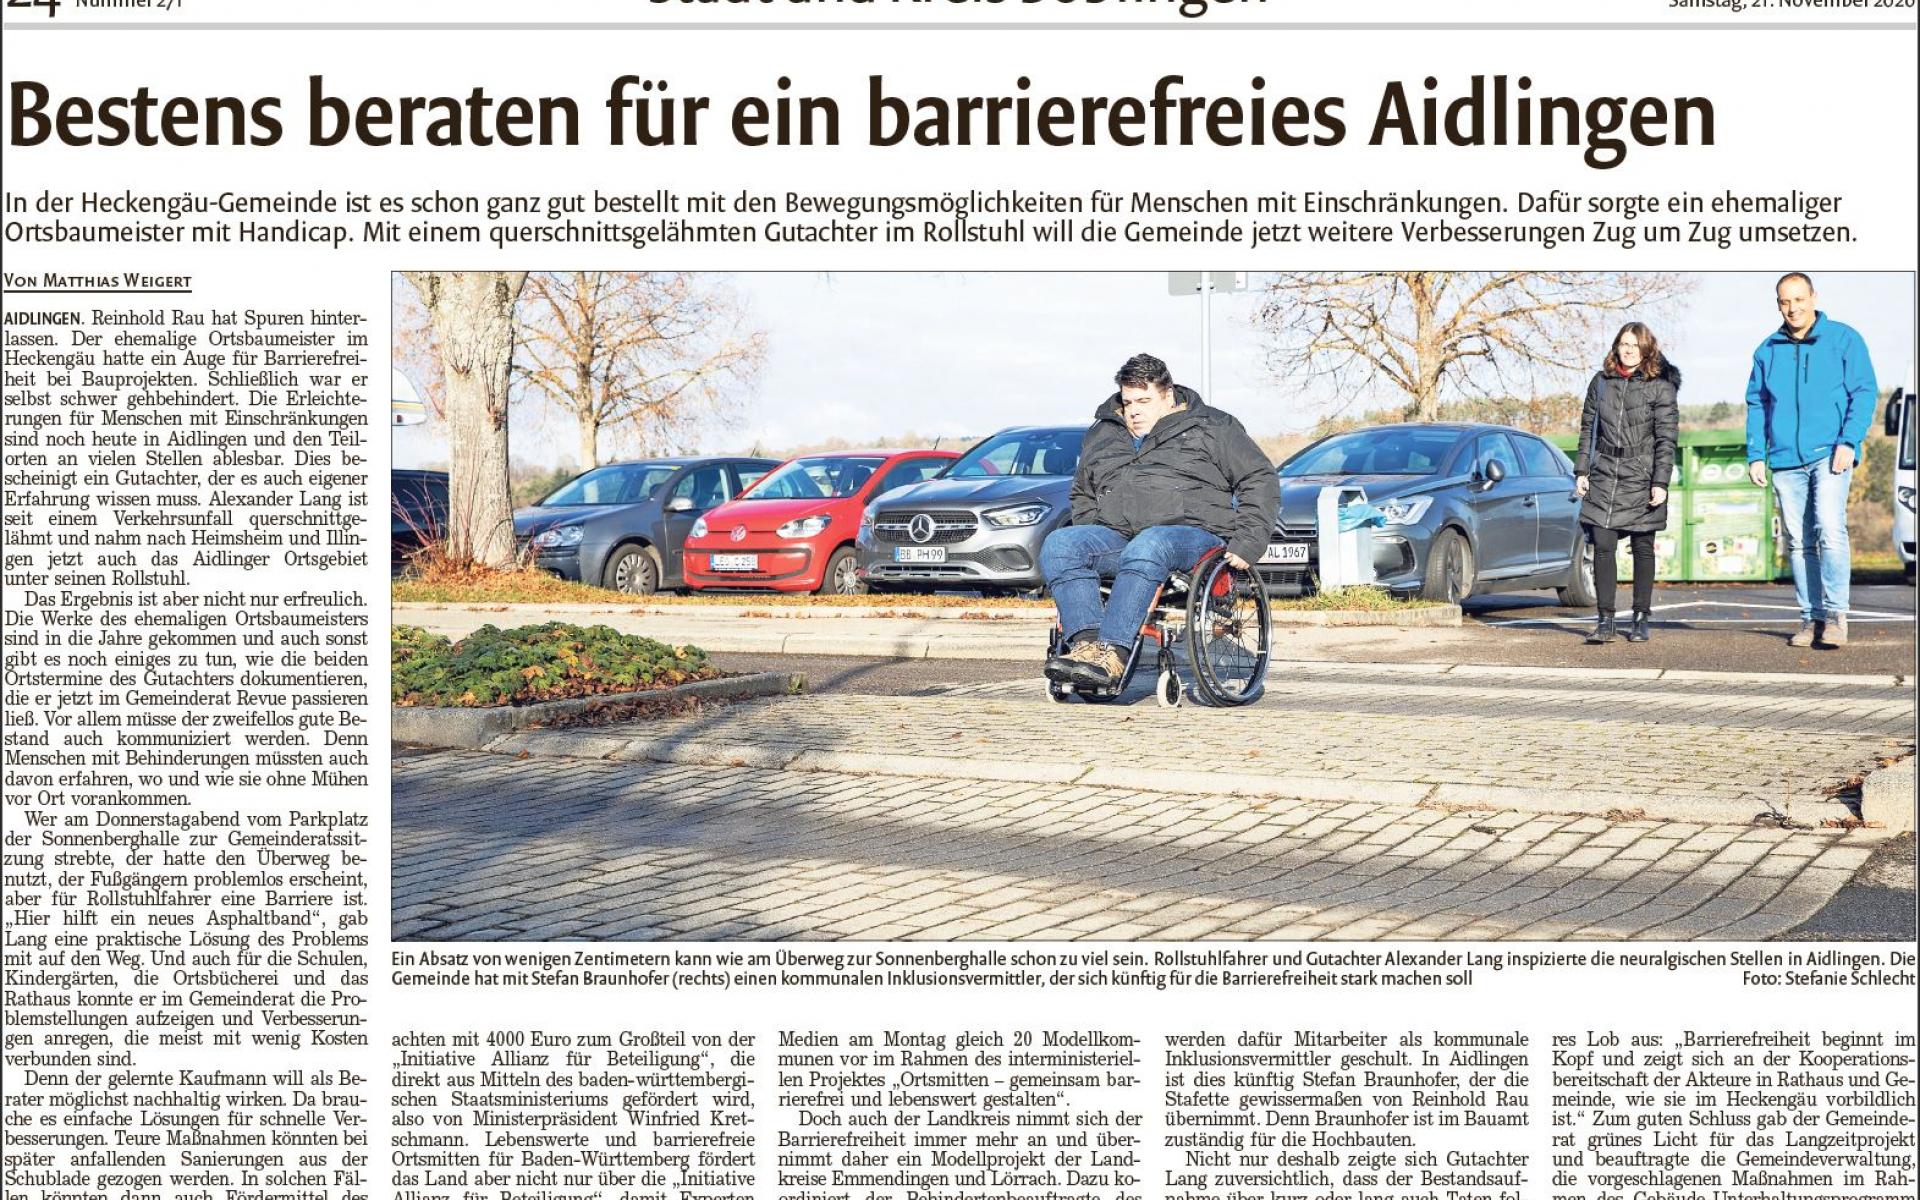 Bild zeigt Bericht aus der Böblinger Kreiszeitung und Bild wie Rollstuhlfaher auf Barrieren aufmerksam macht